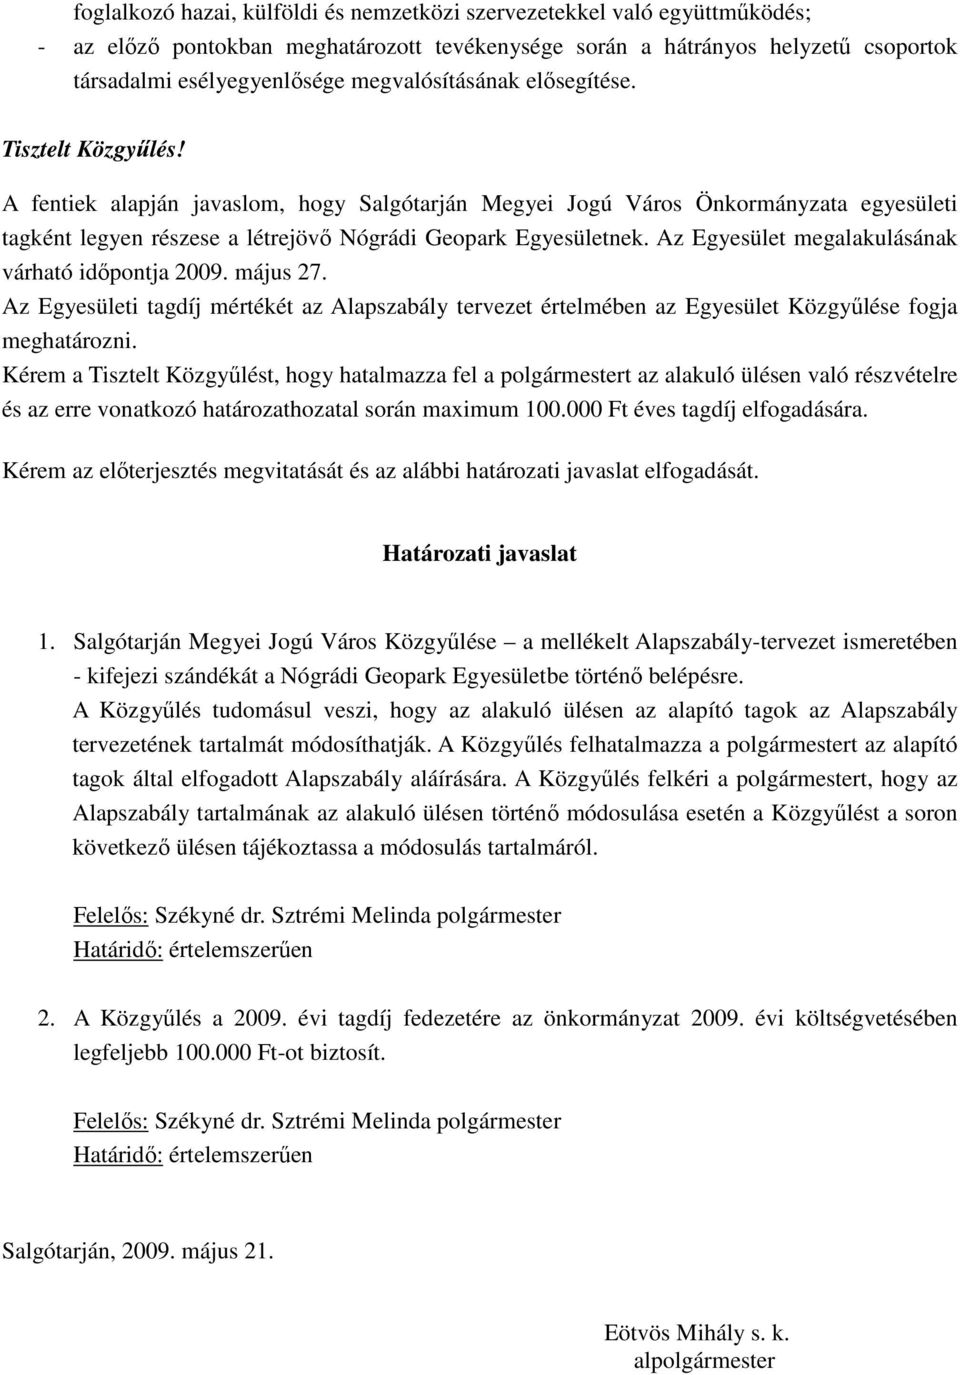 A fentiek alapján javaslom, hogy Salgótarján Megyei Jogú Város Önkormányzata egyesületi tagként legyen részese a létrejövı Nógrádi Geopark Egyesületnek.